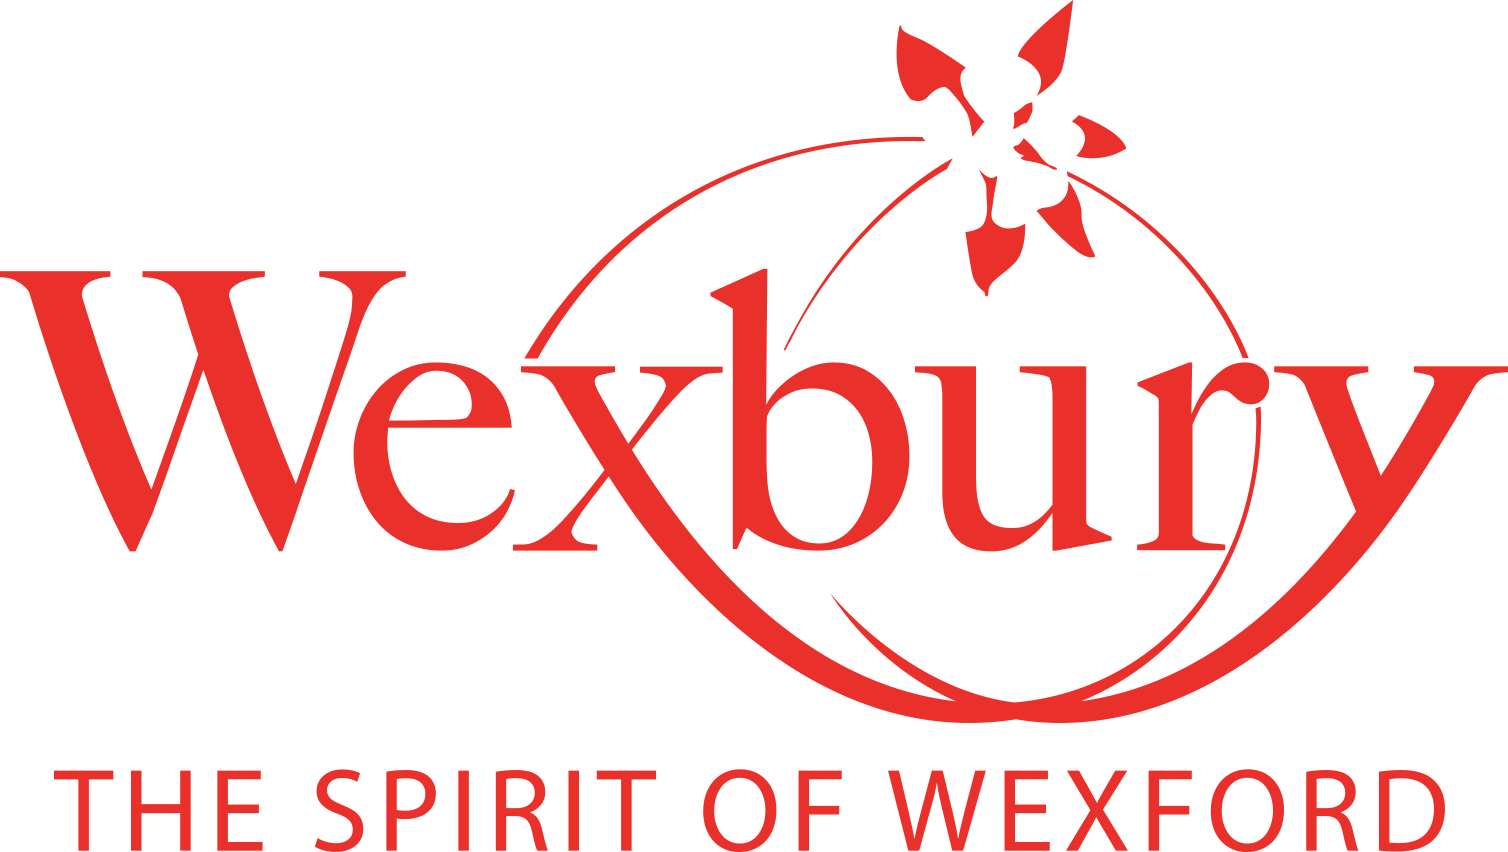 Wexbury Spirits